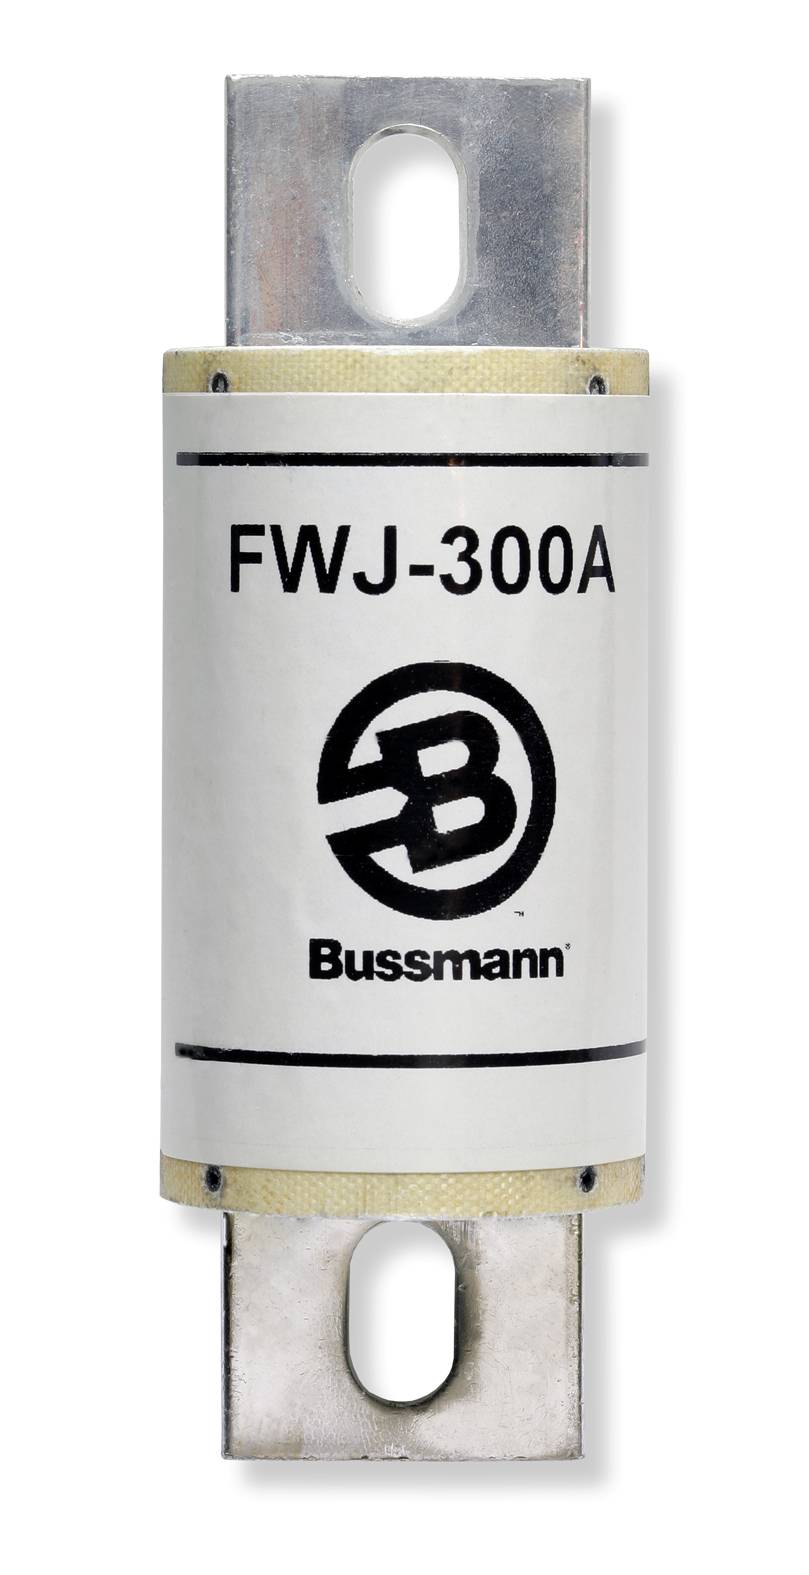 Part # FWJ-200A  Manufacturer BUSSMANN  Product Type 1000 Volt Fuse